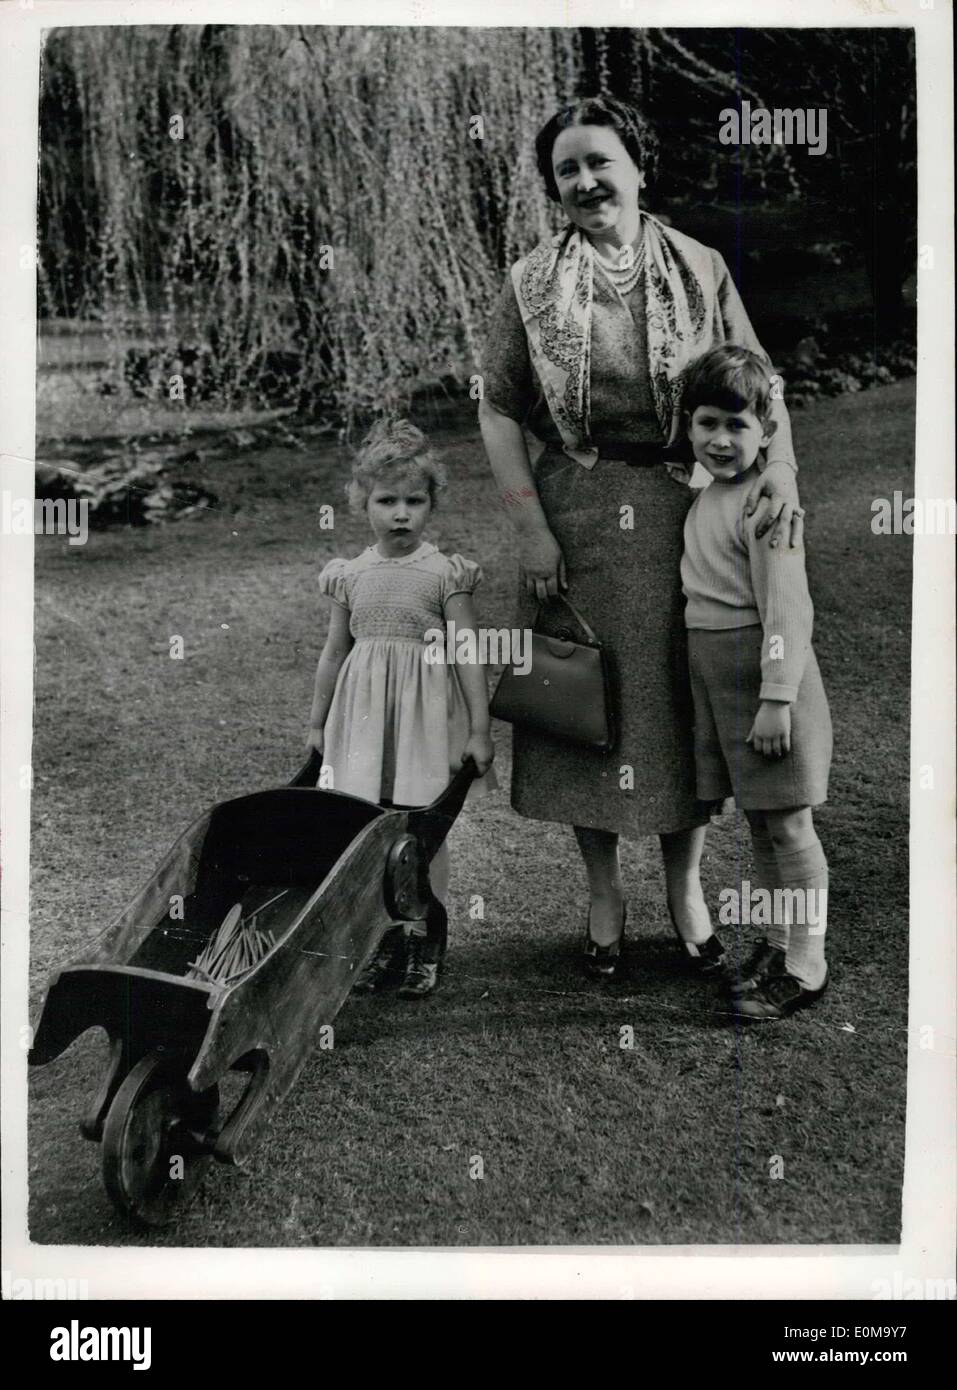 25. April 1954 - neue Studie der Königin-Mutter und ihr Enkel in Gärten der Royal Lodge - Windsor. Fotoshows stellte neu speziell Studie über HM Königin Elizabeth die Königin-Mutter - mit ihren beiden Enkelkindern Prinz Charles und Prinzessin Anne in den Gärten der Royal Lodge, Windsor. Stockfoto